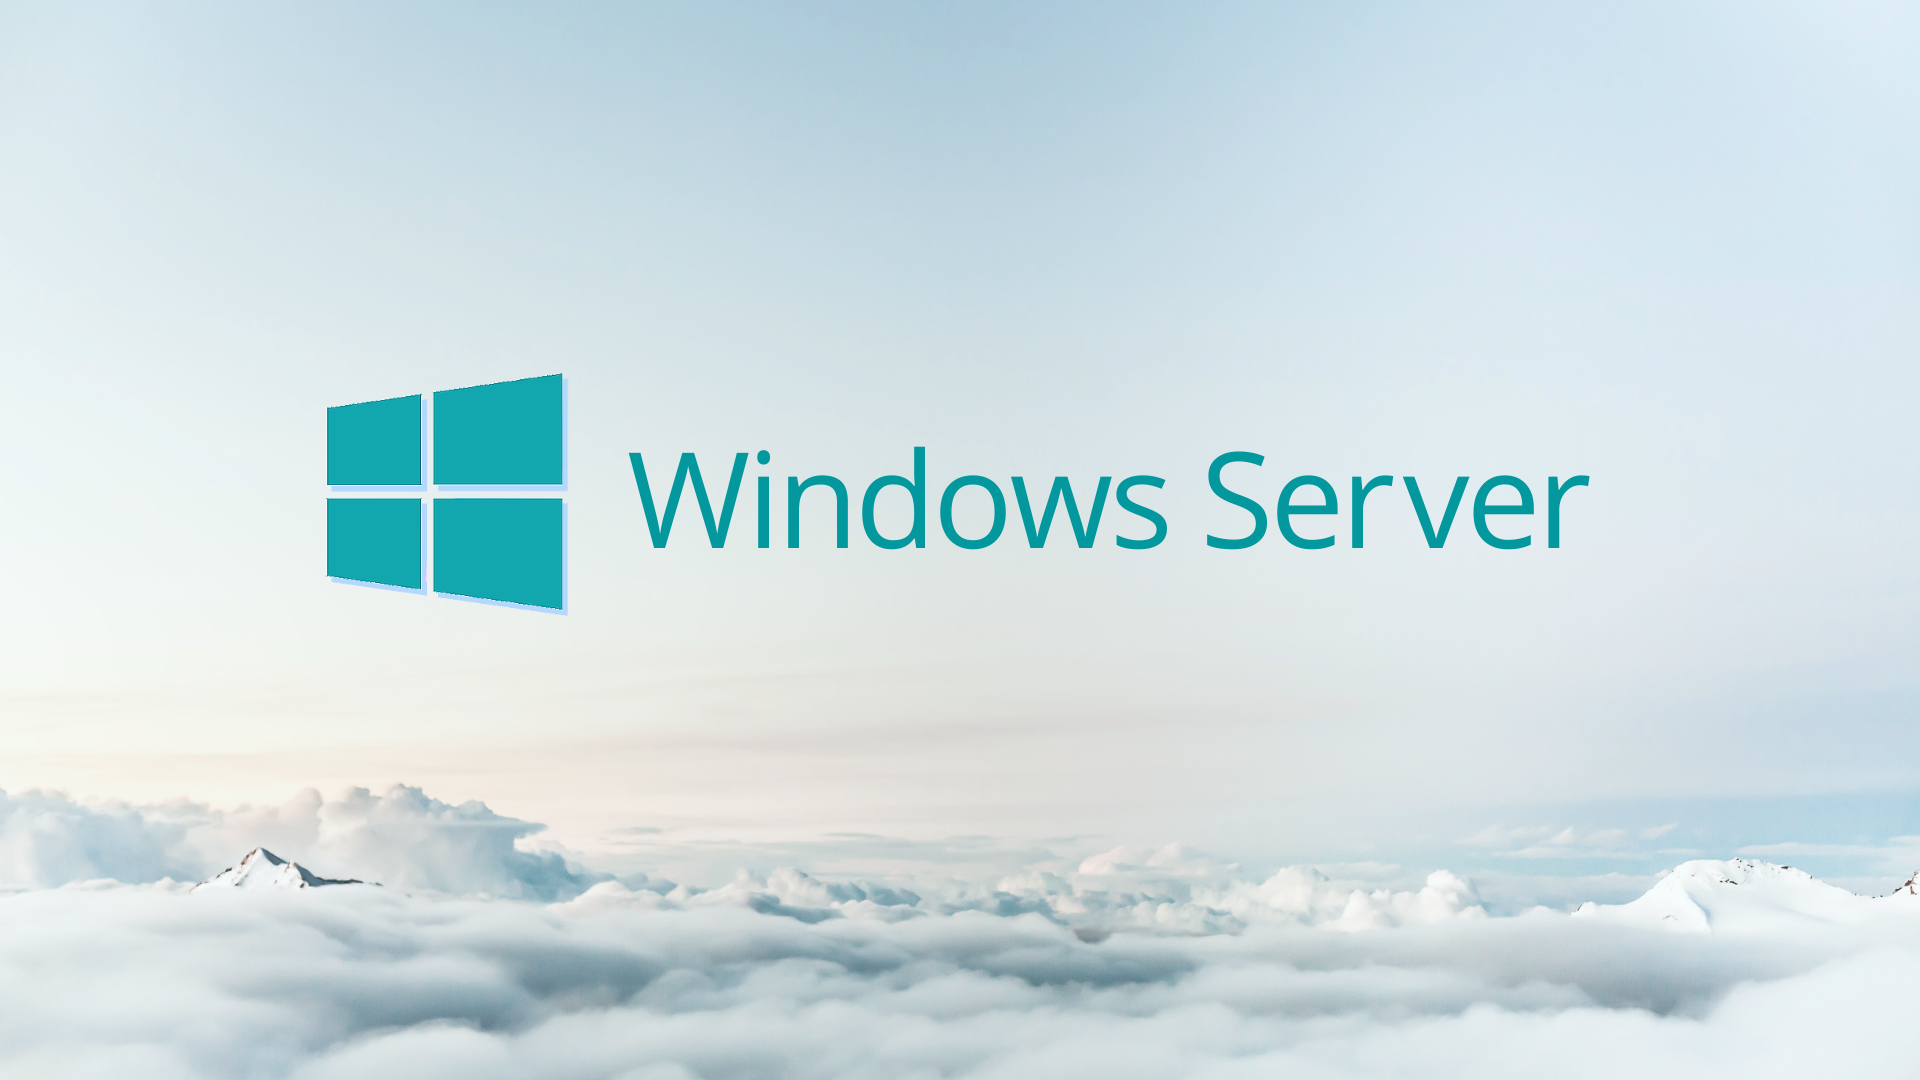 Windows Server больше не будет обновляться дважды в год, подтверждает Microsoft RU Atsit